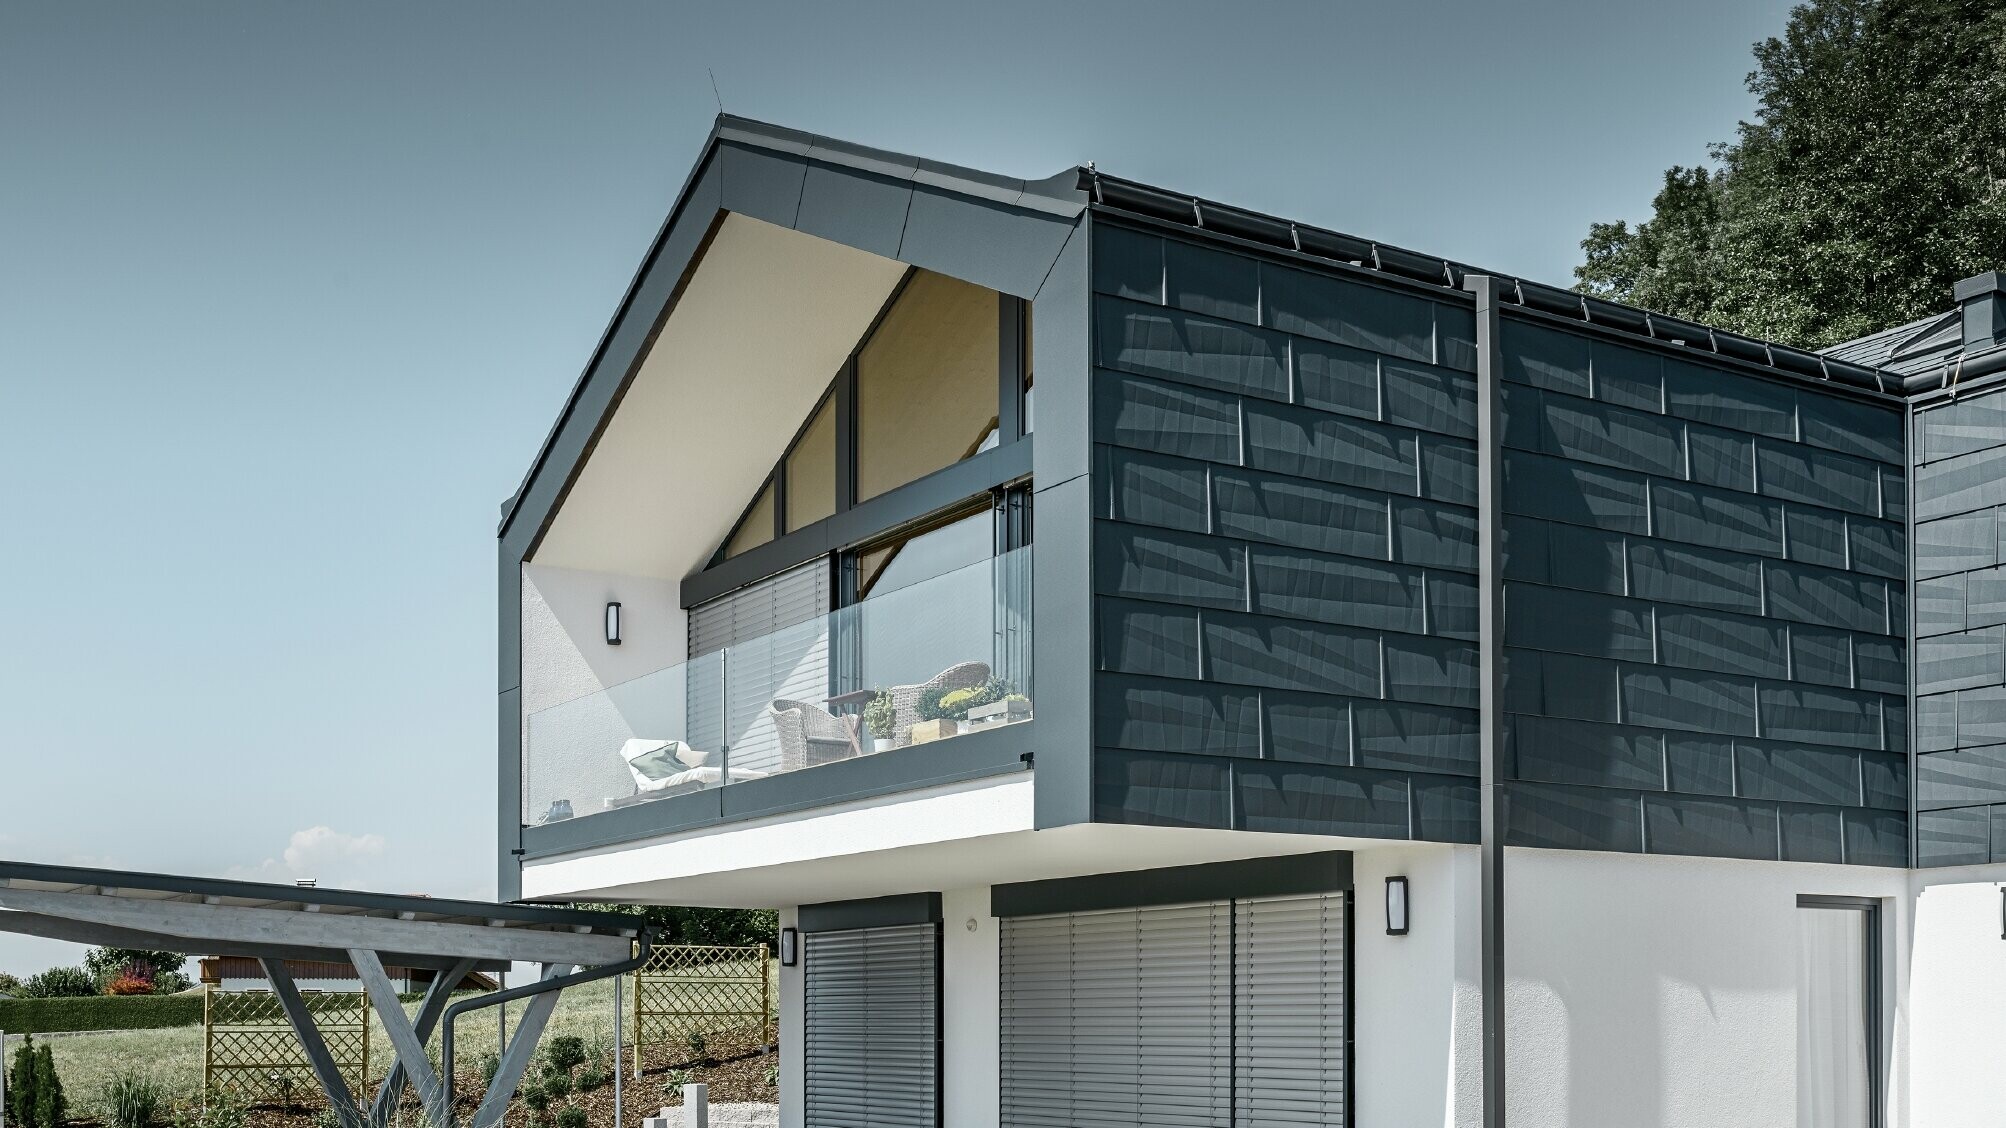 Maison en copropriété avec large façade vitrée — Toiture et façade réalisées avec des panneaux FX.12 PREFA couleur anthracite